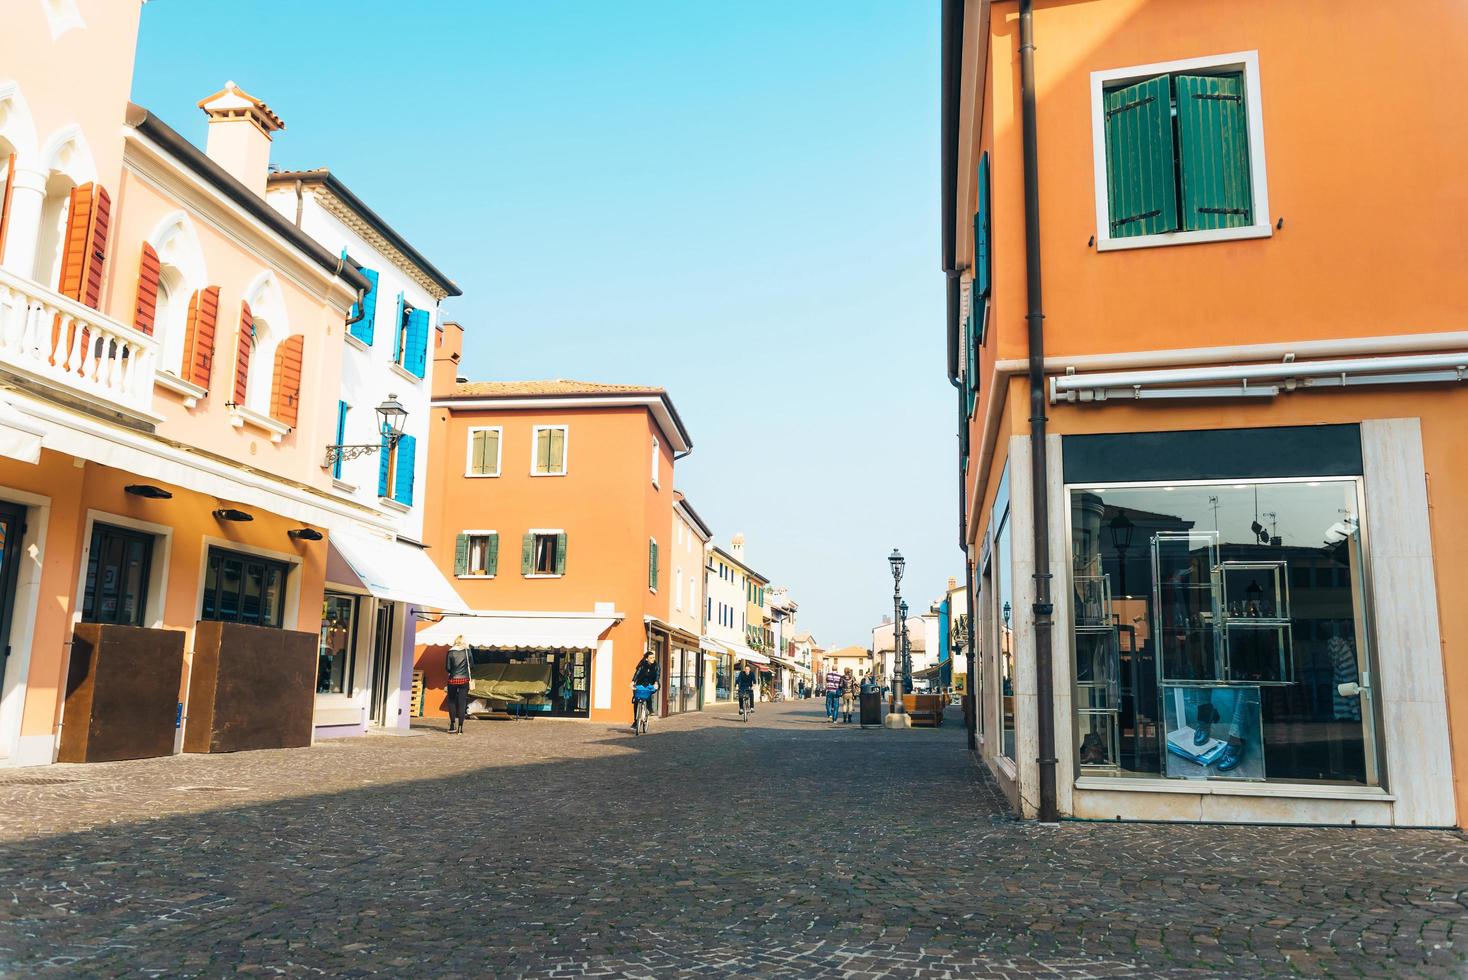 caorle, italia 2017- distretto turistico della vecchia città provinciale di caorle in italia foto